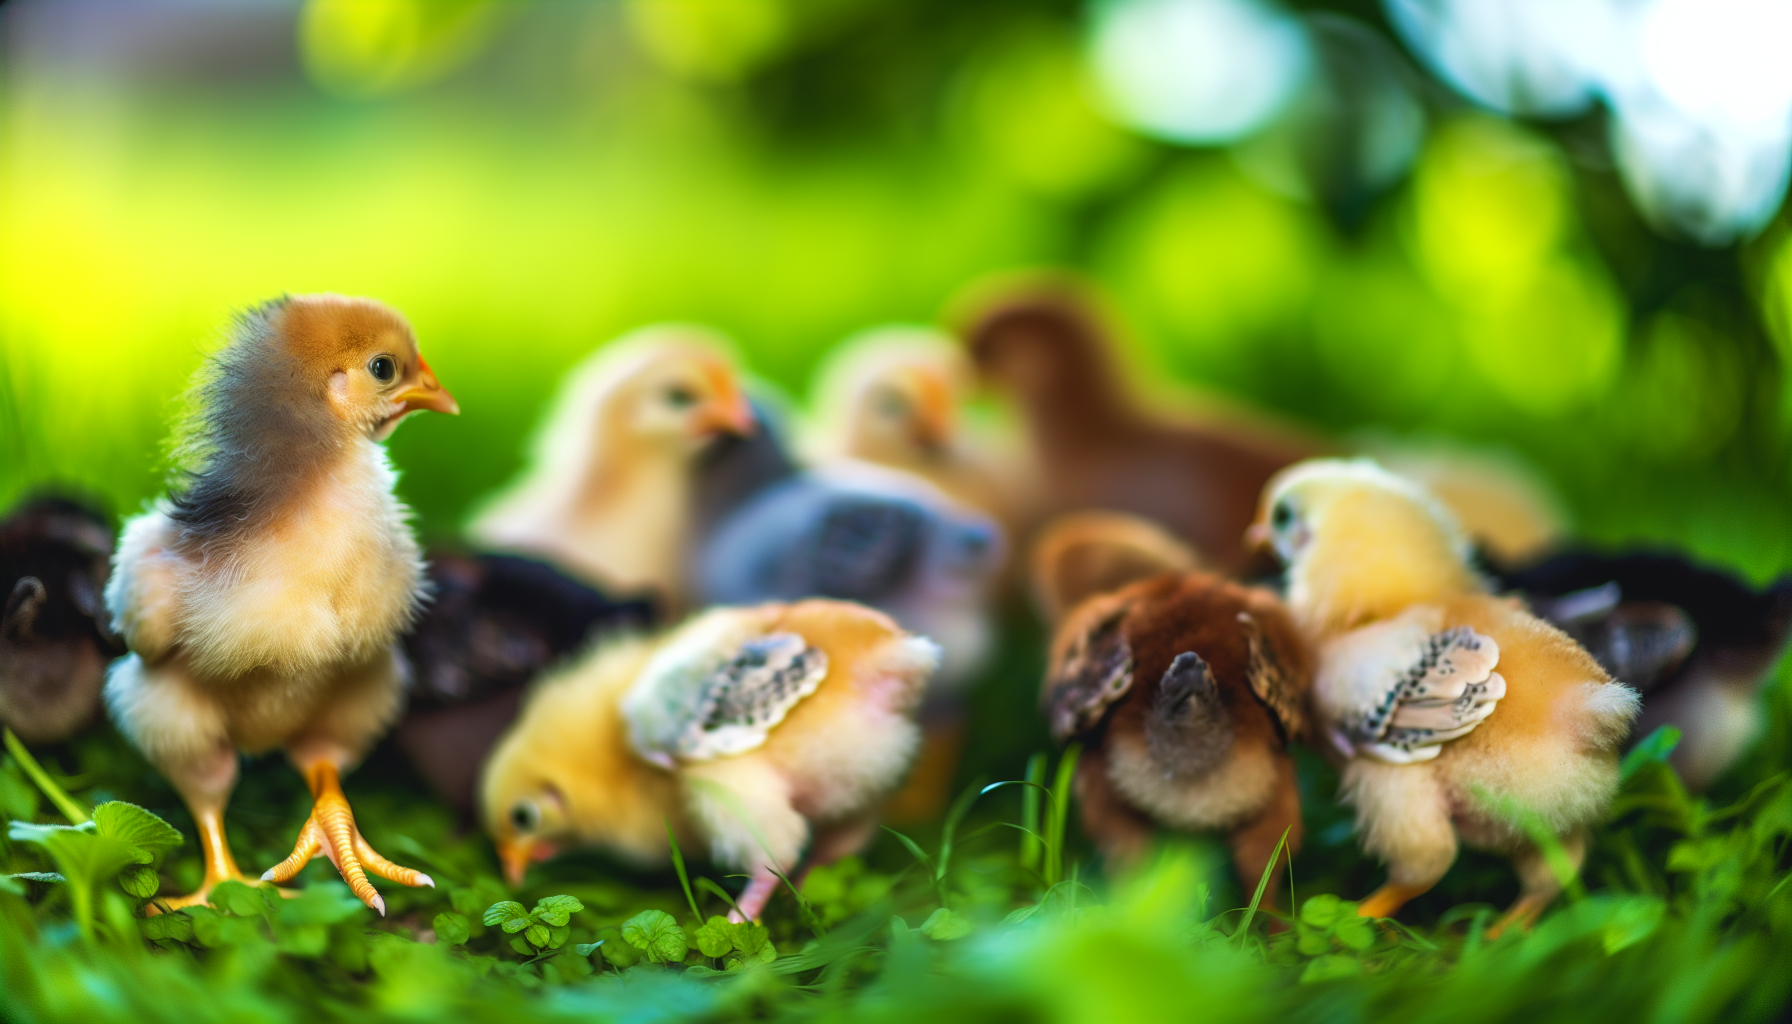 Encouraging natural behaviors in 8 week old chicks